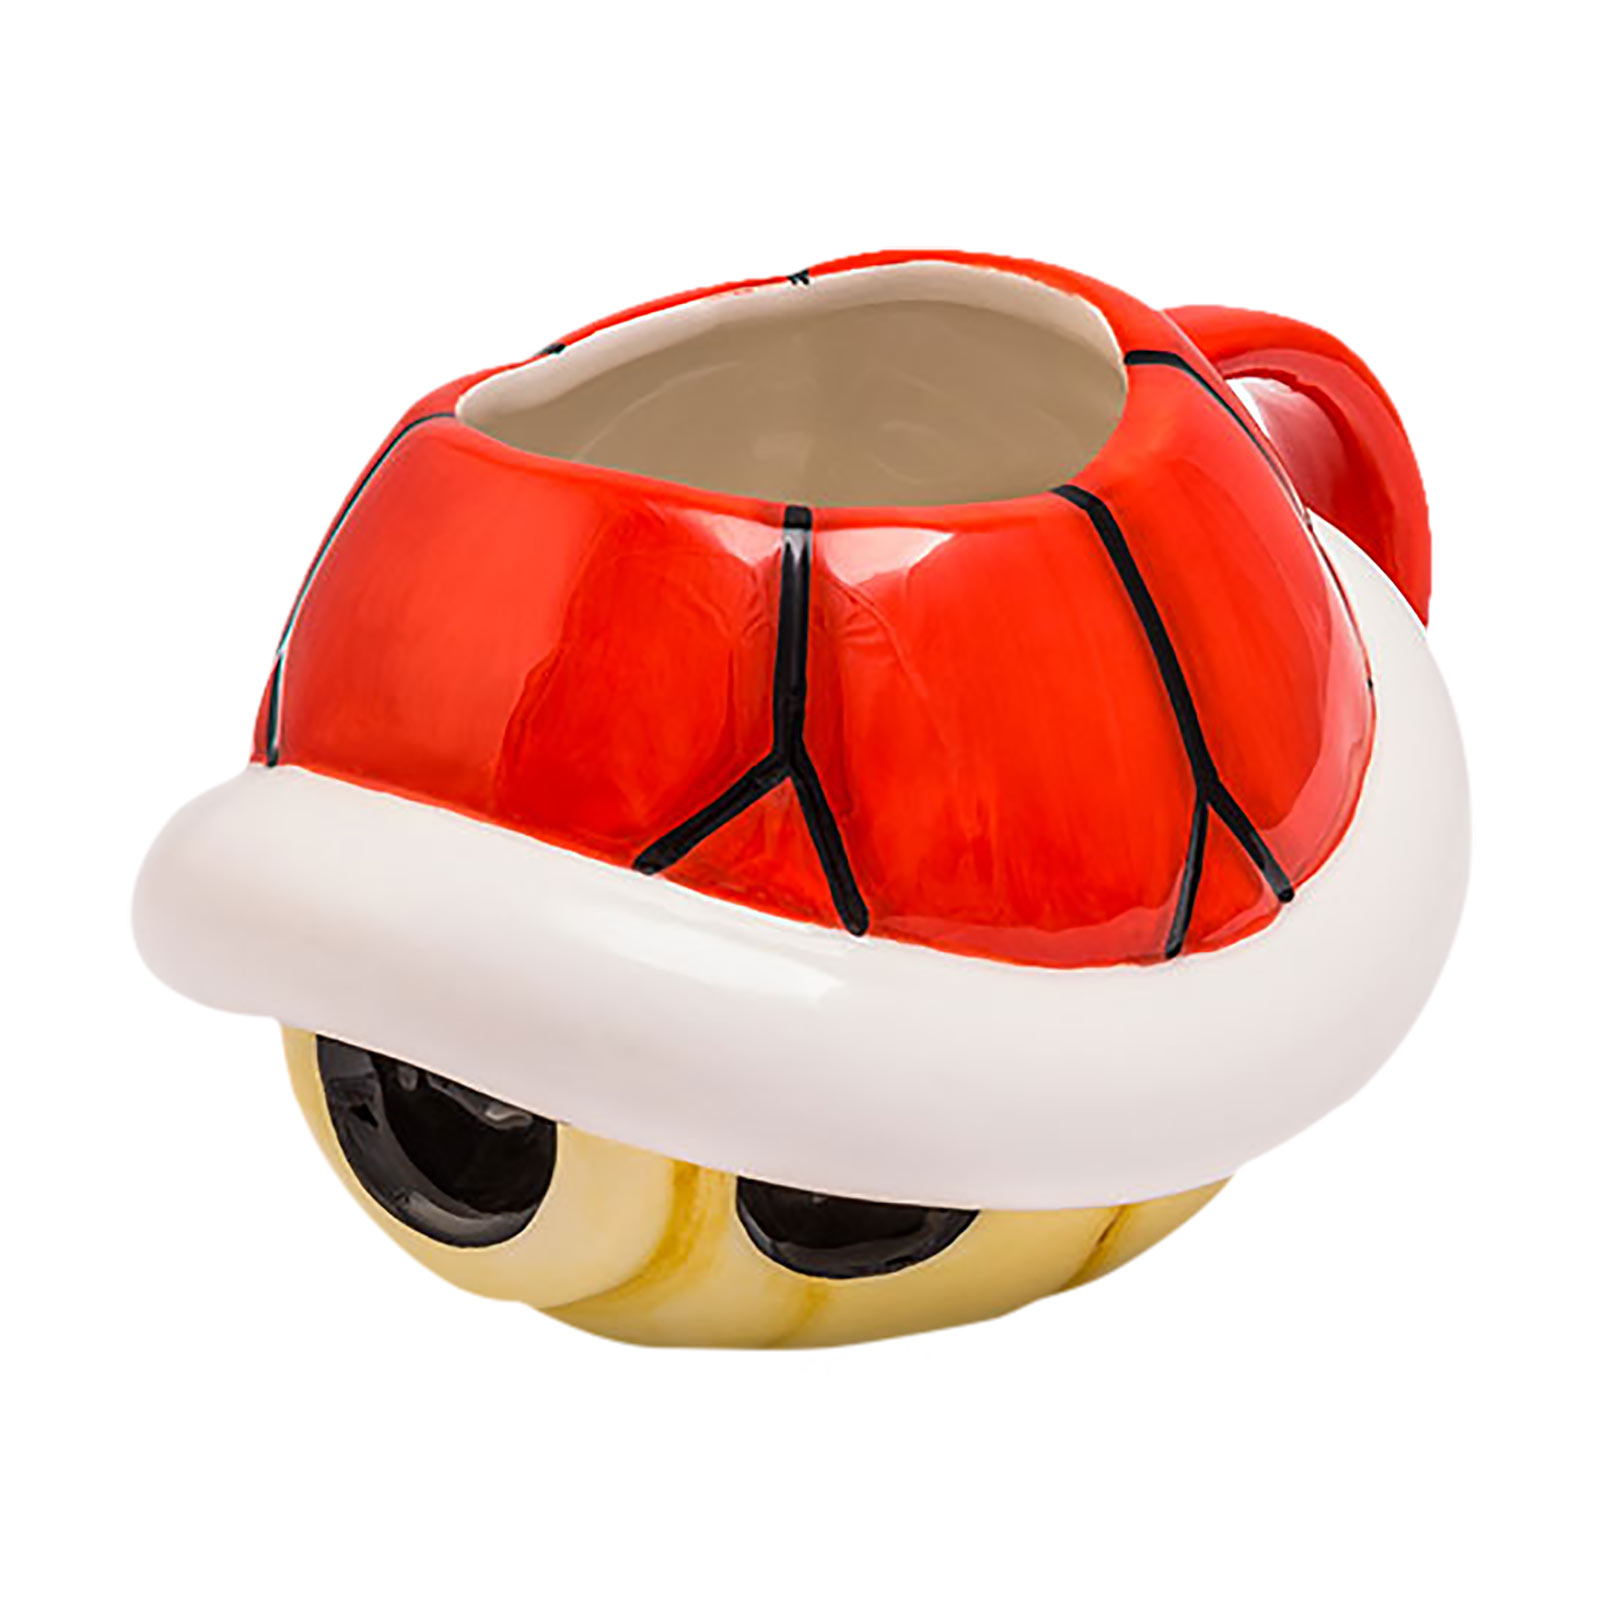 Super Mario - Koopa 3D Mug